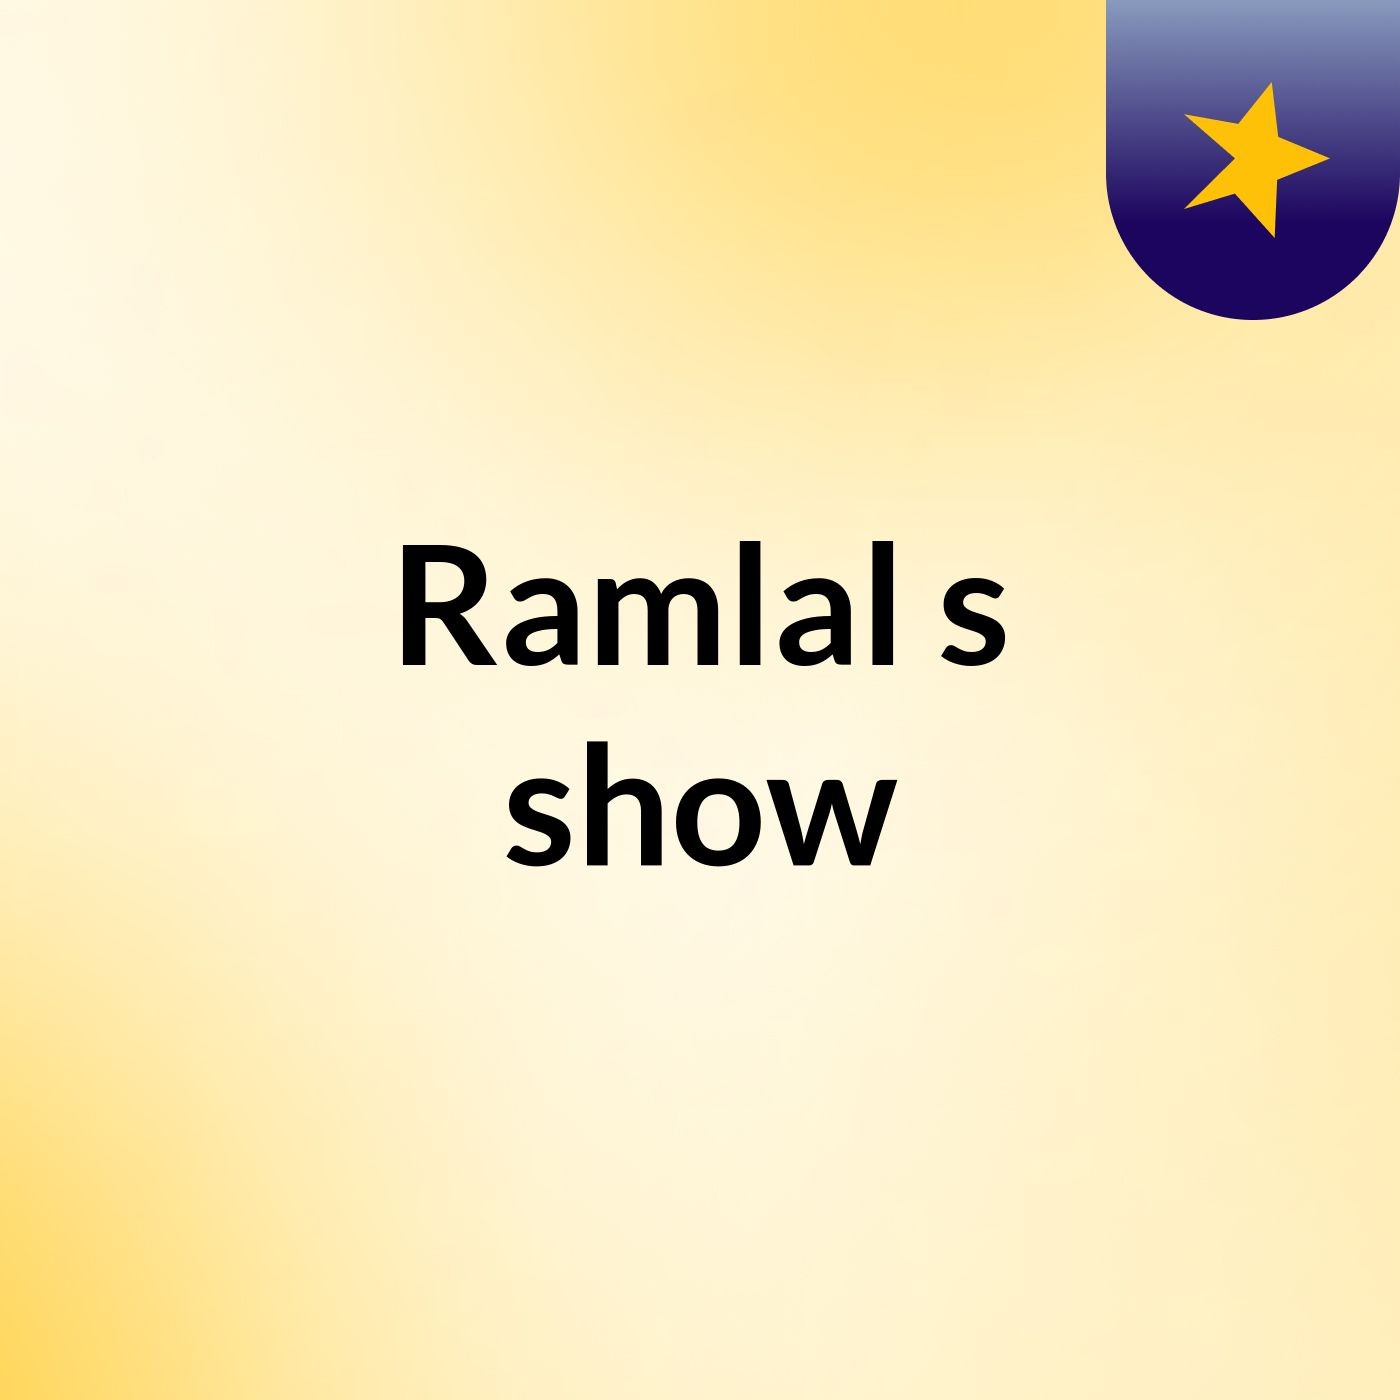 Ramlal's show